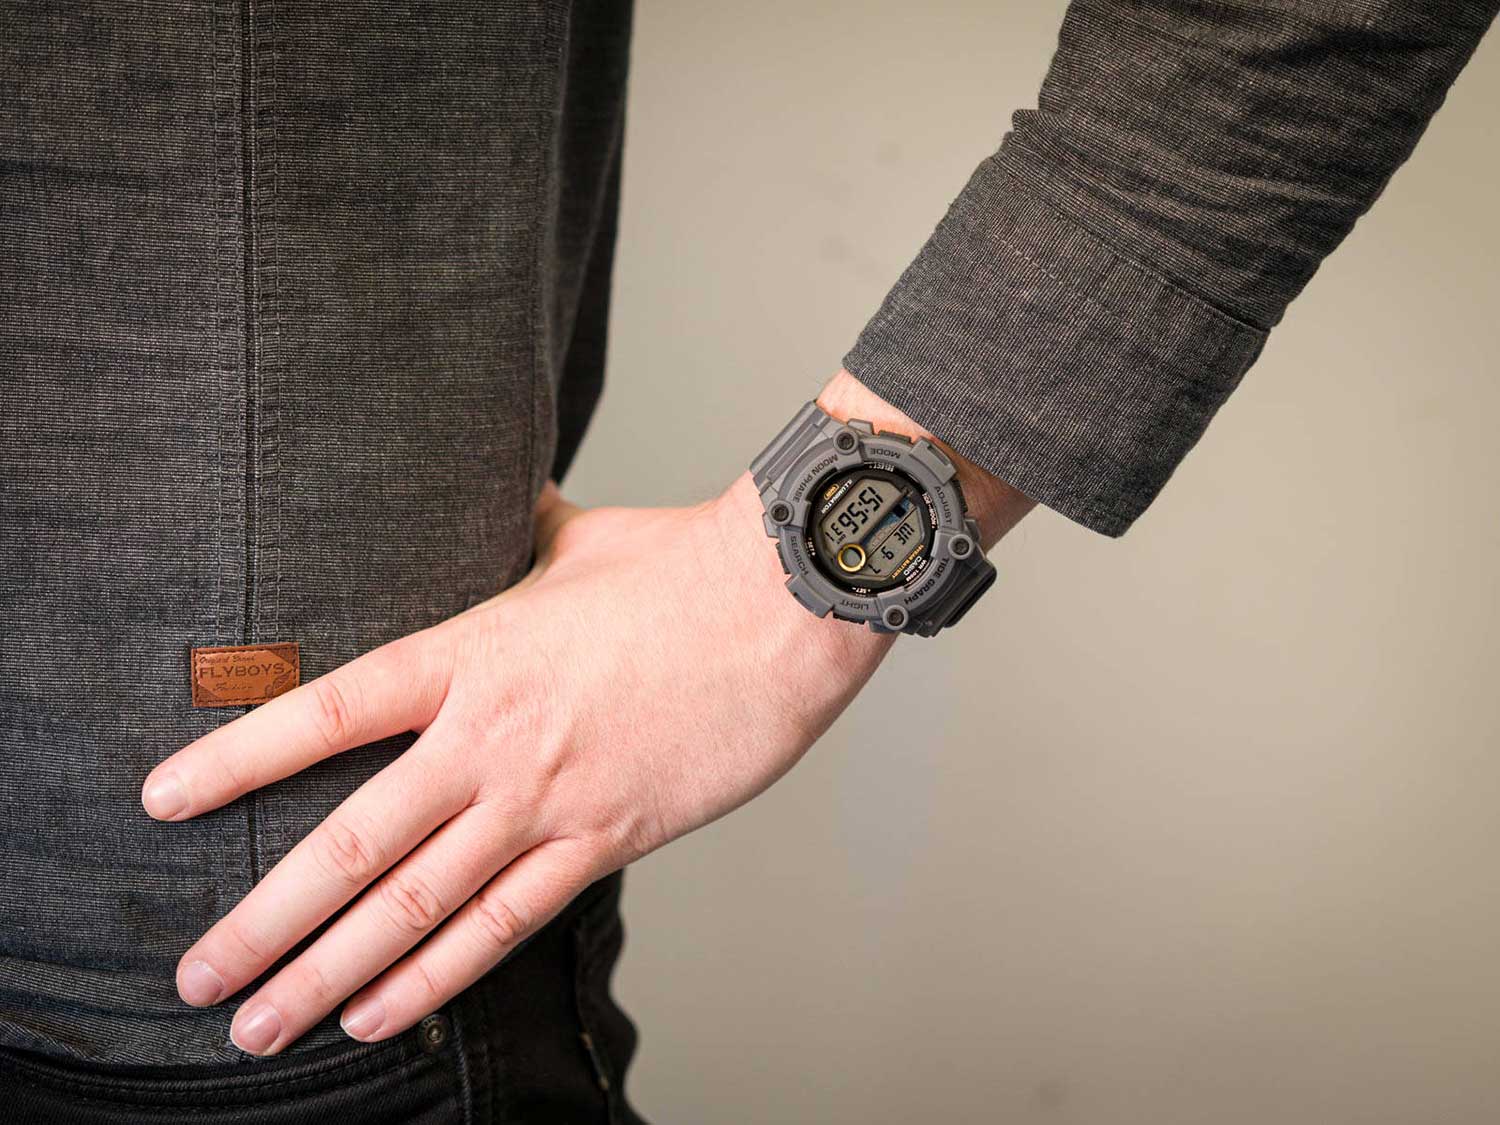 Наручные часы Casio Collection описание цене, фото, лучшей AllTime.ru WS-1300H-8AVEF интернет-магазине купить — в по характеристики